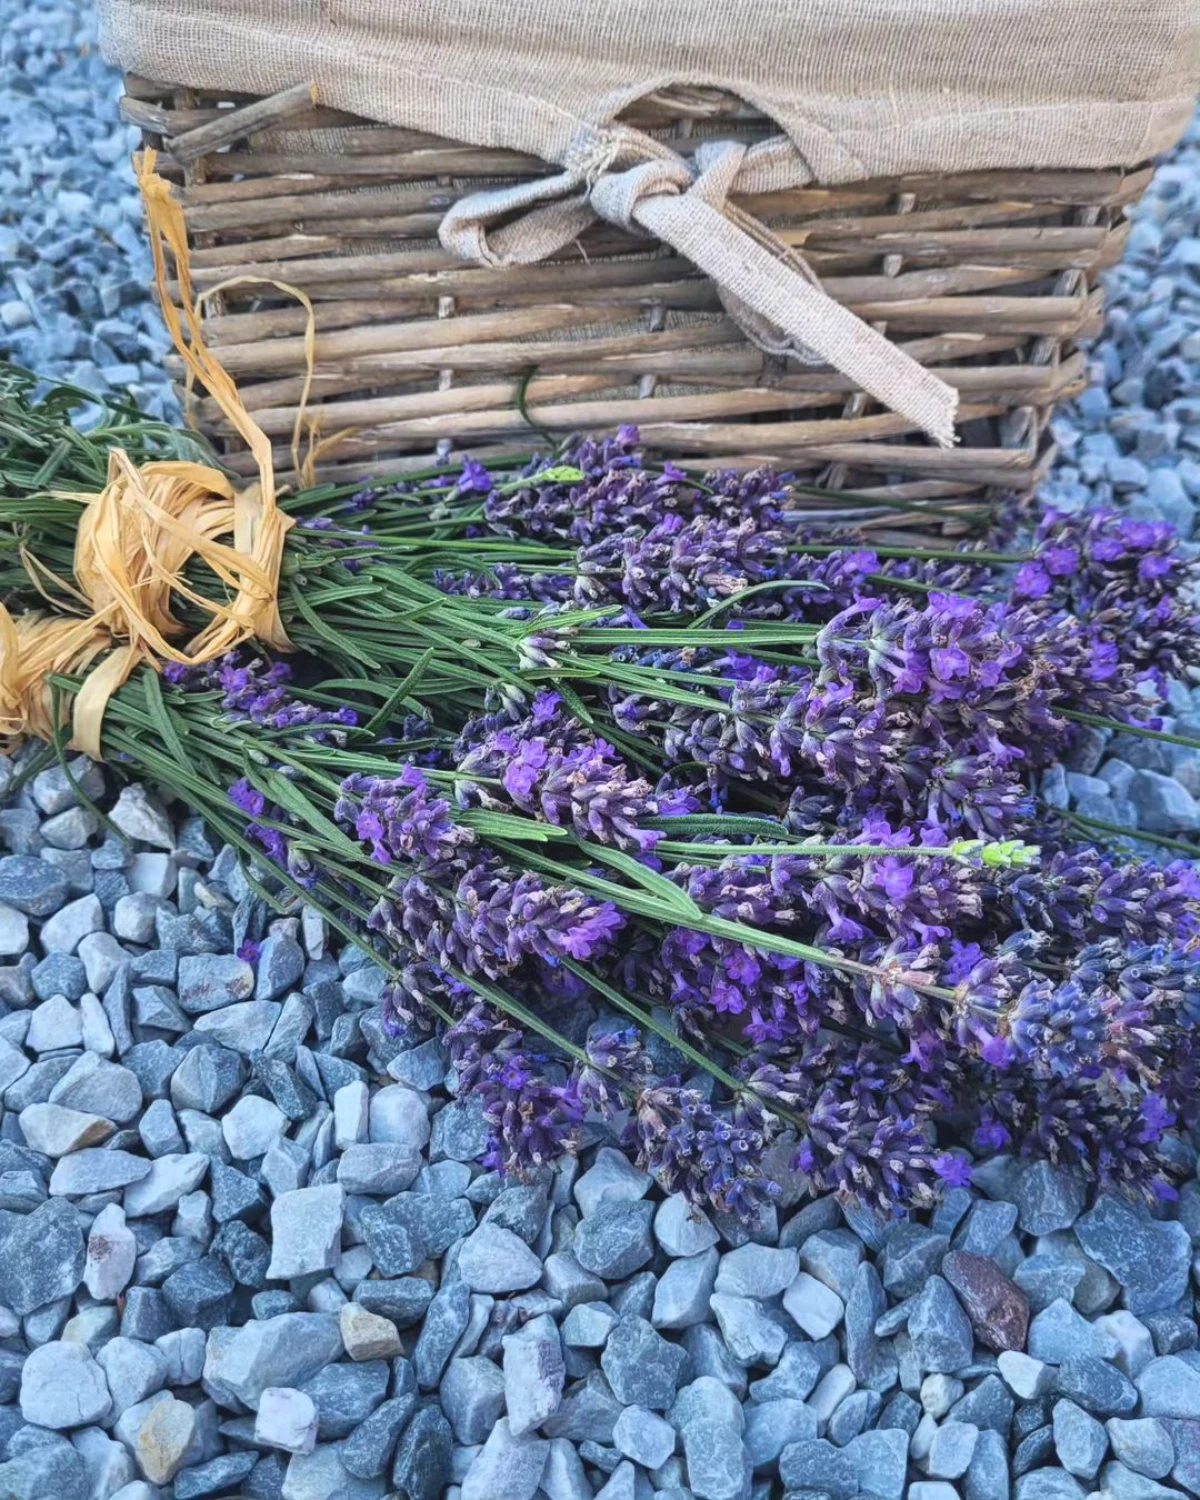 problemes arrosage lavande graviers bouquets de lavande fleurs violettes